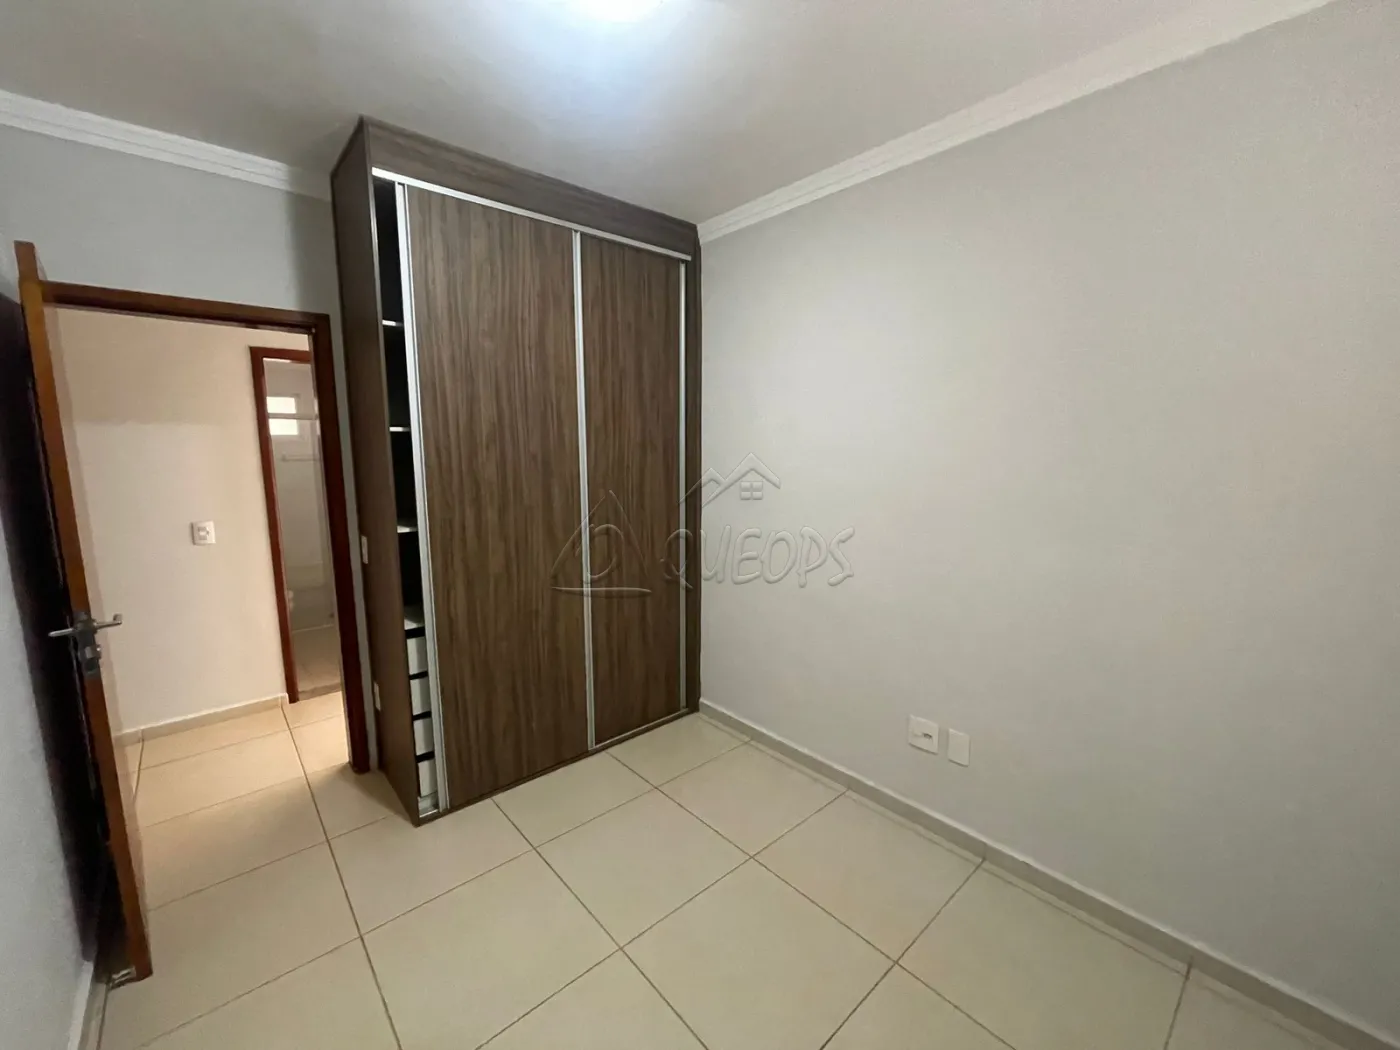 Alugar Apartamento / Padrão em Barretos R$ 2.200,00 - Foto 10